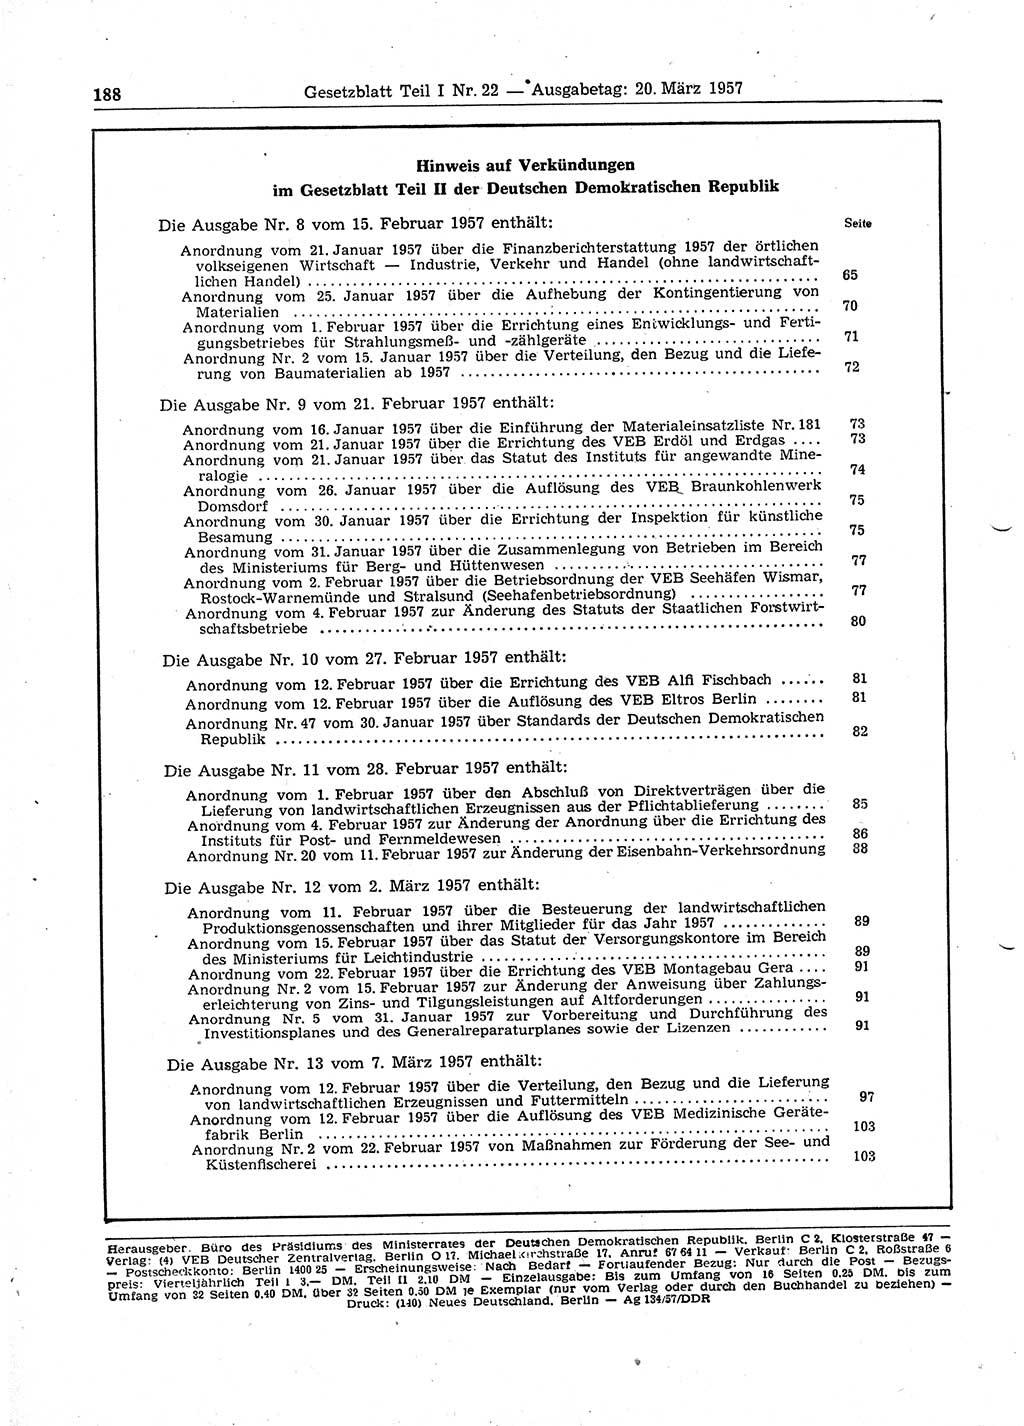 Gesetzblatt (GBl.) der Deutschen Demokratischen Republik (DDR) Teil Ⅰ 1957, Seite 188 (GBl. DDR Ⅰ 1957, S. 188)